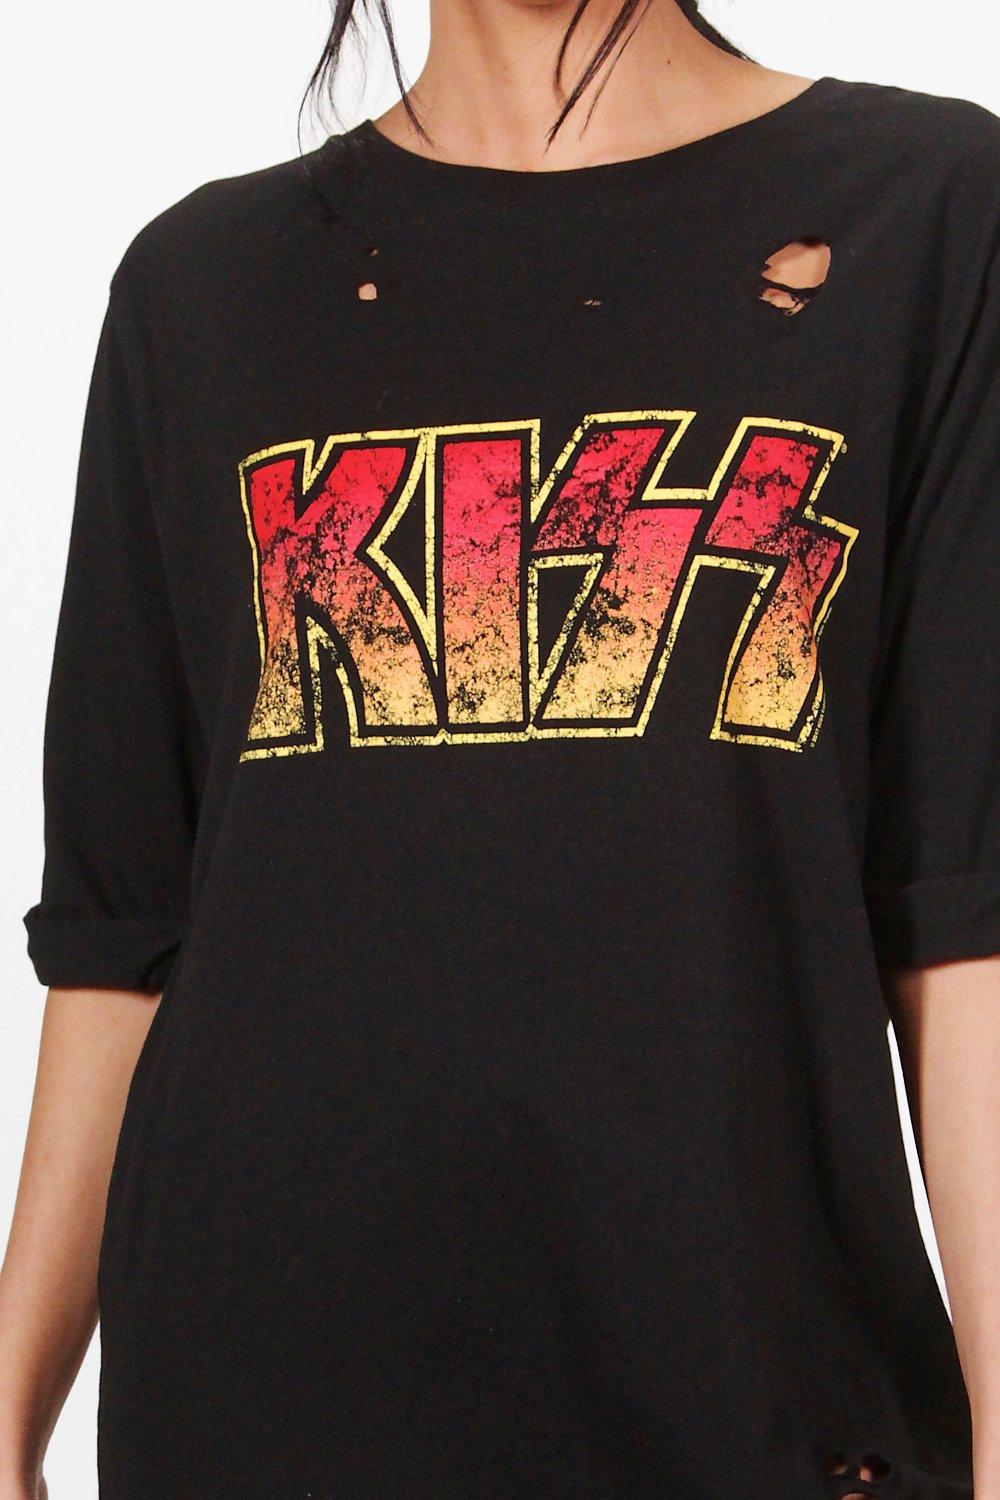 kiss t shirt dress